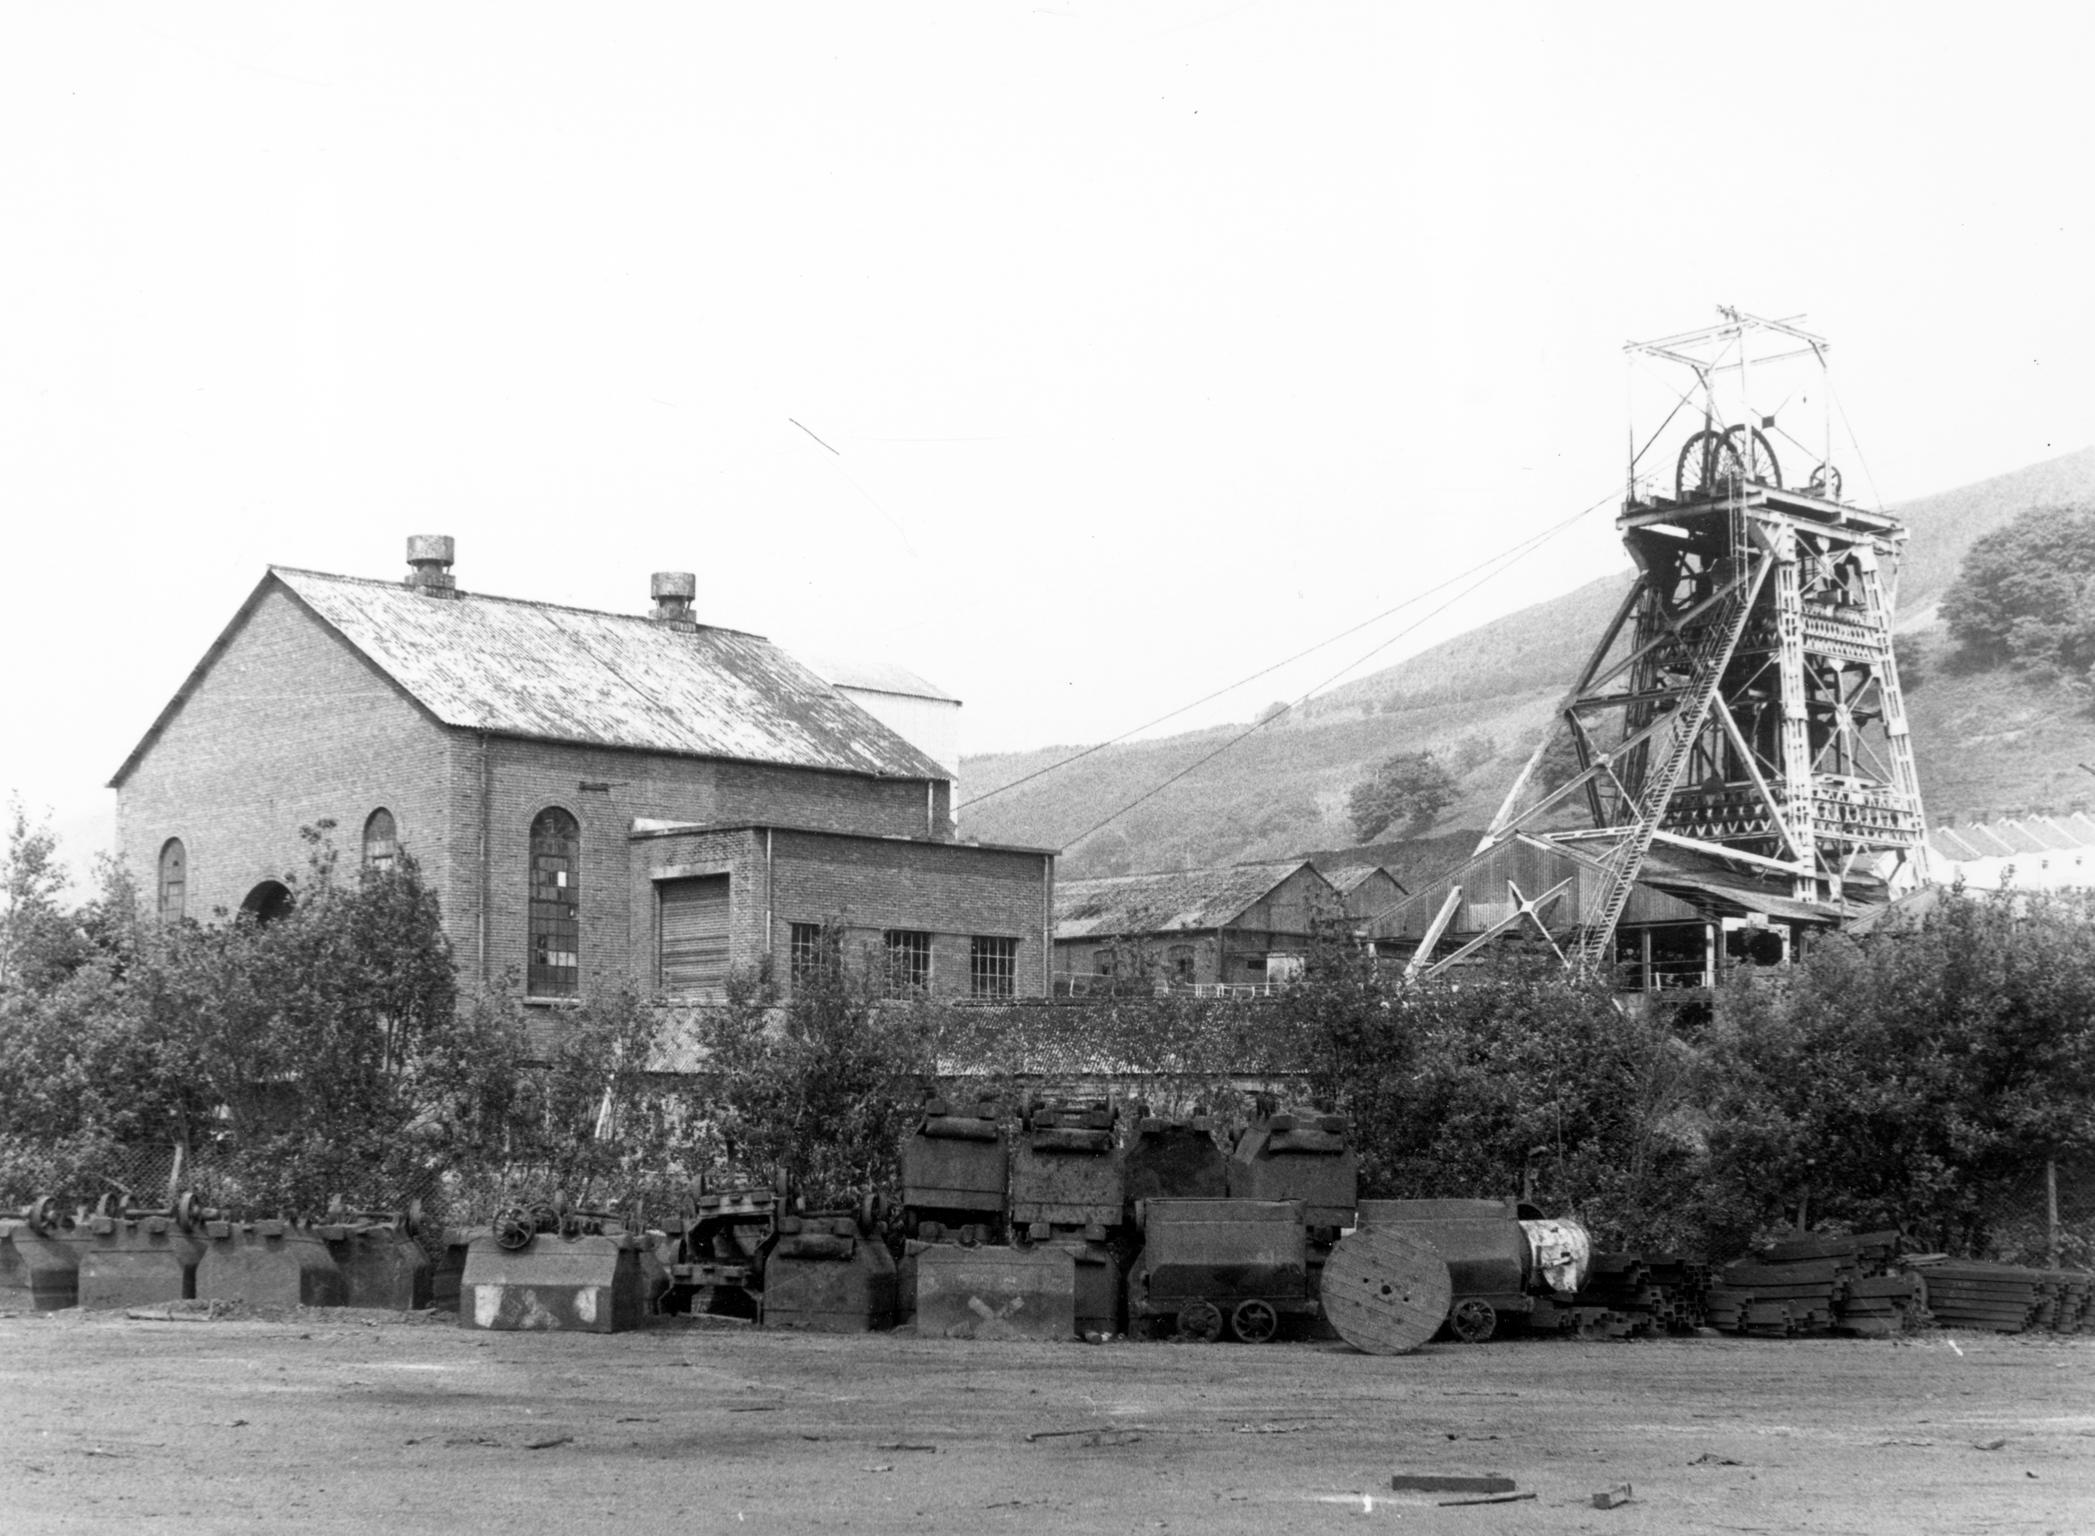 Merthyr Vale Colliery, photograph